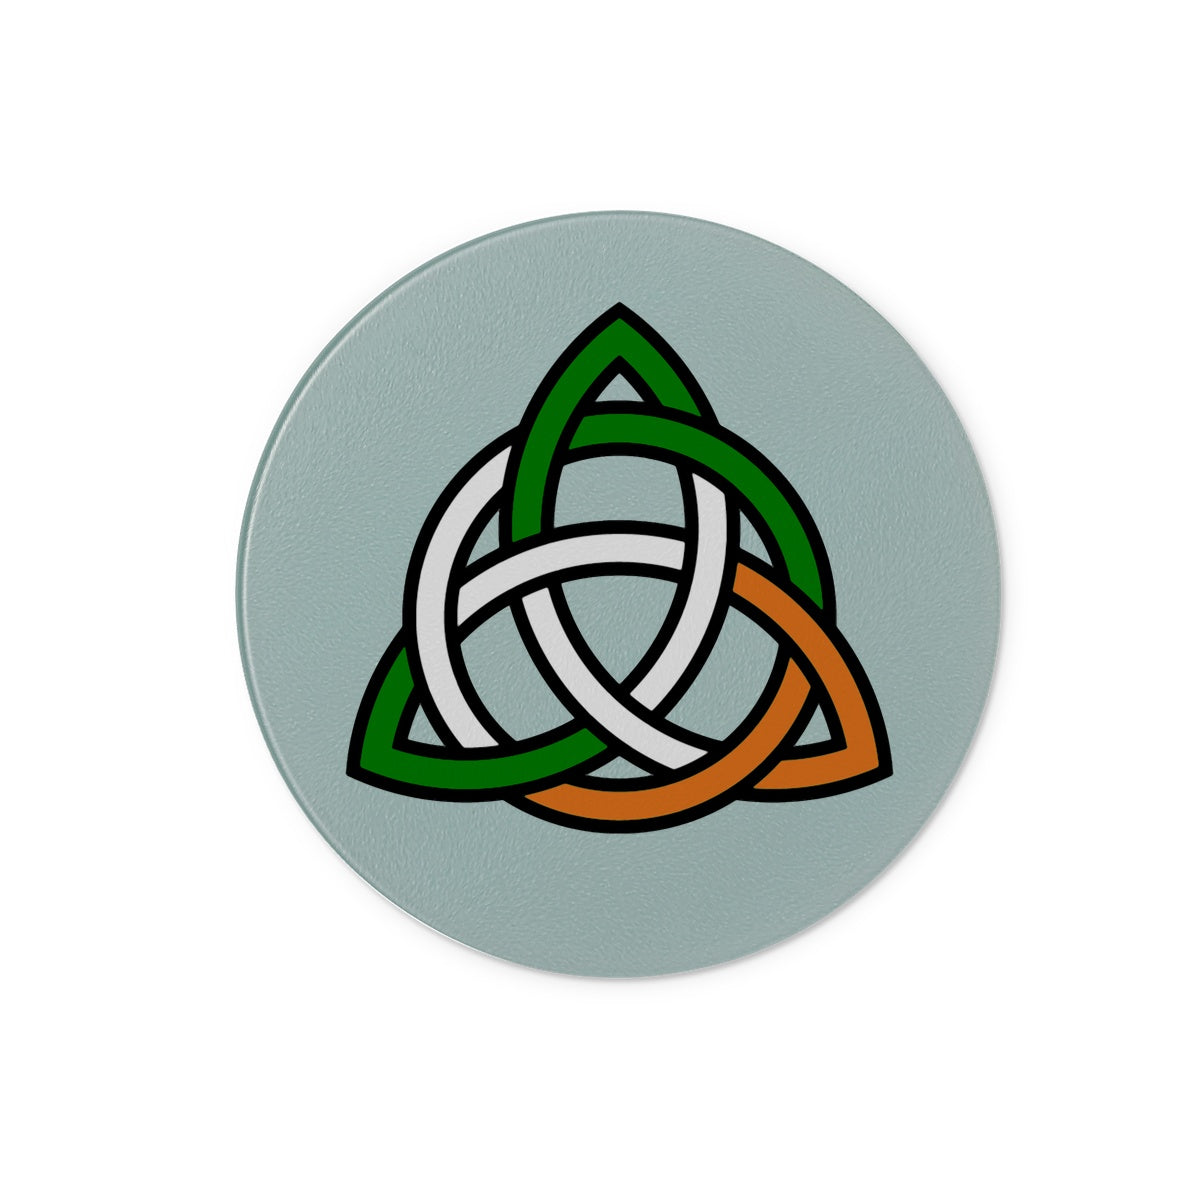 Irish Celtic Knot Glass Chopping Board